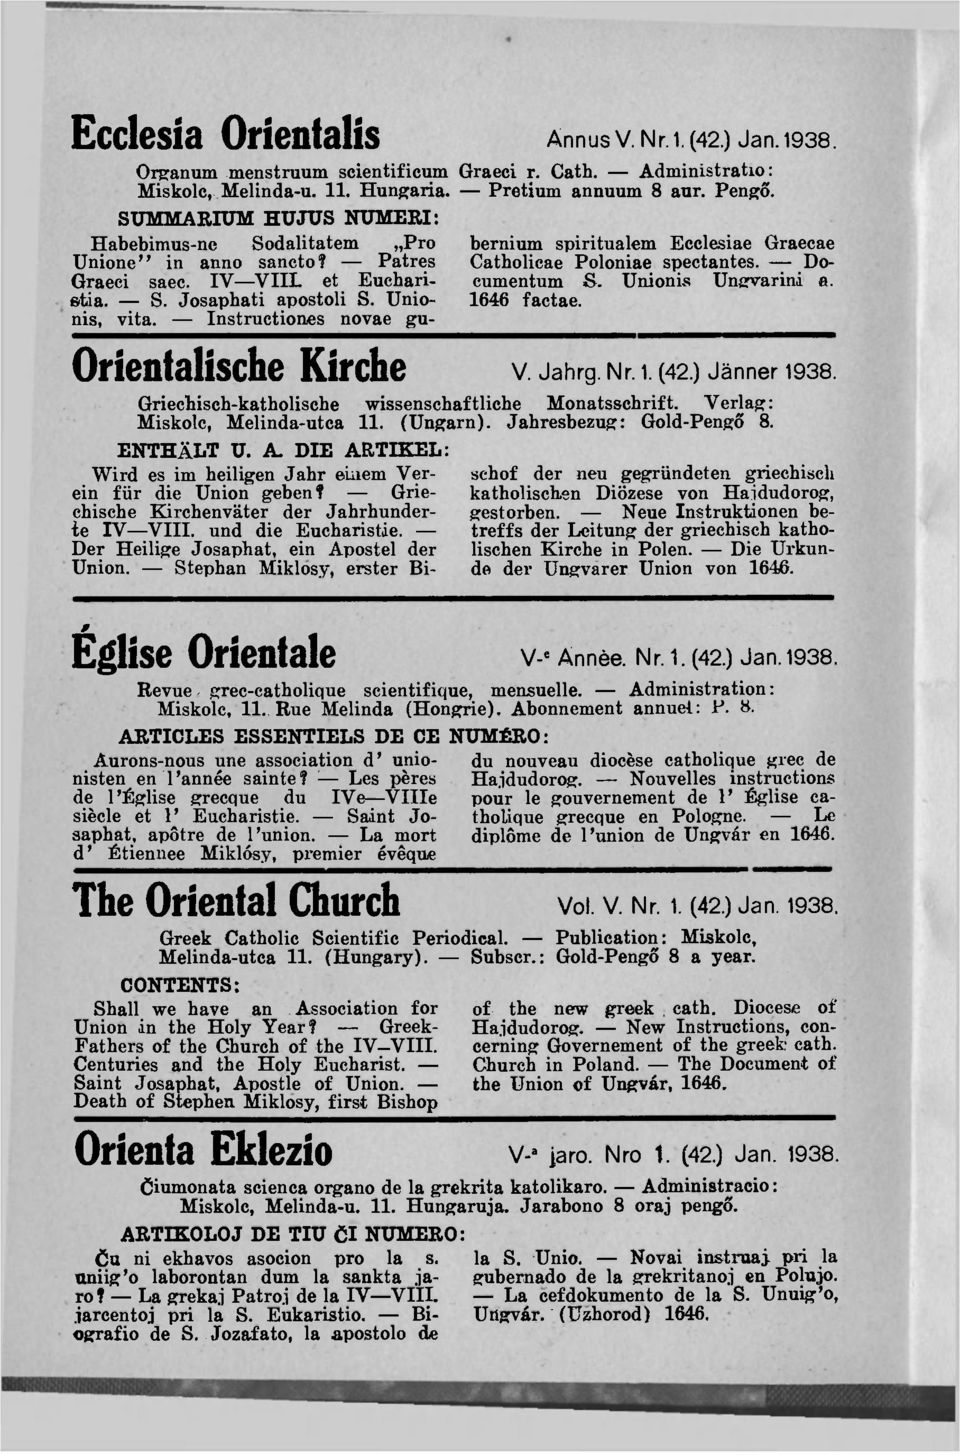 bernium spirituálém Ecclesiae Graecae Catholieae Poloniae spectantes. Documentum S. Uni on is Ungvarini a. 1646 factae. Orientalische Kirche V. Jahrg. Nr. 1. (42.) Jänner 1938.